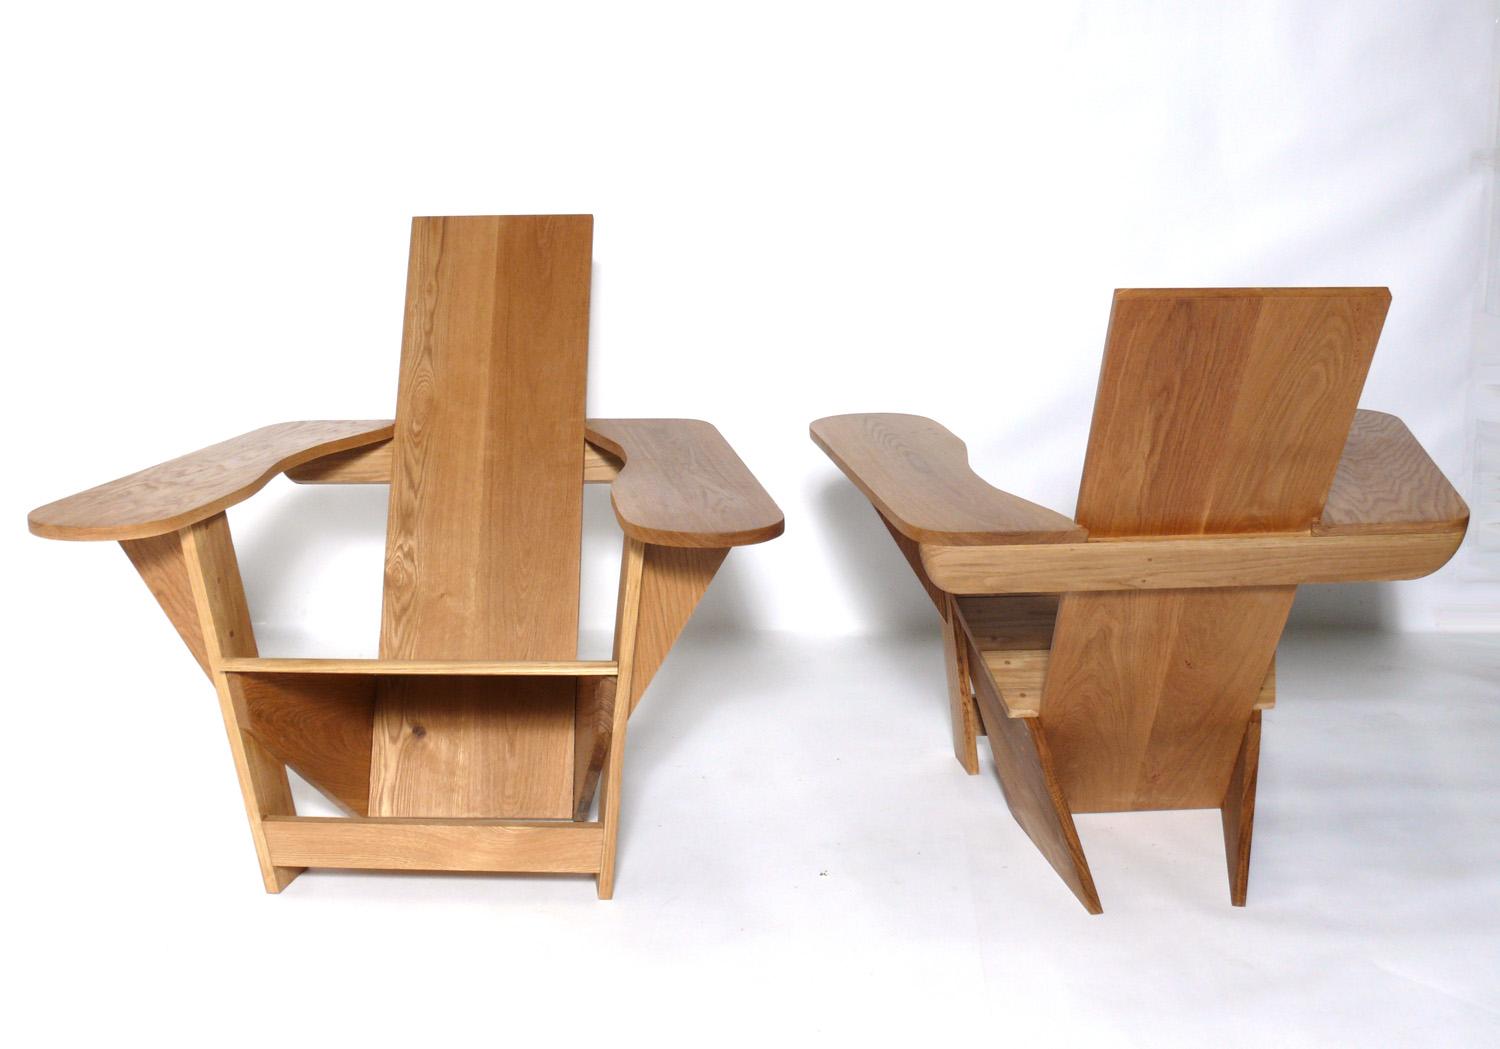 used adirondack chairs